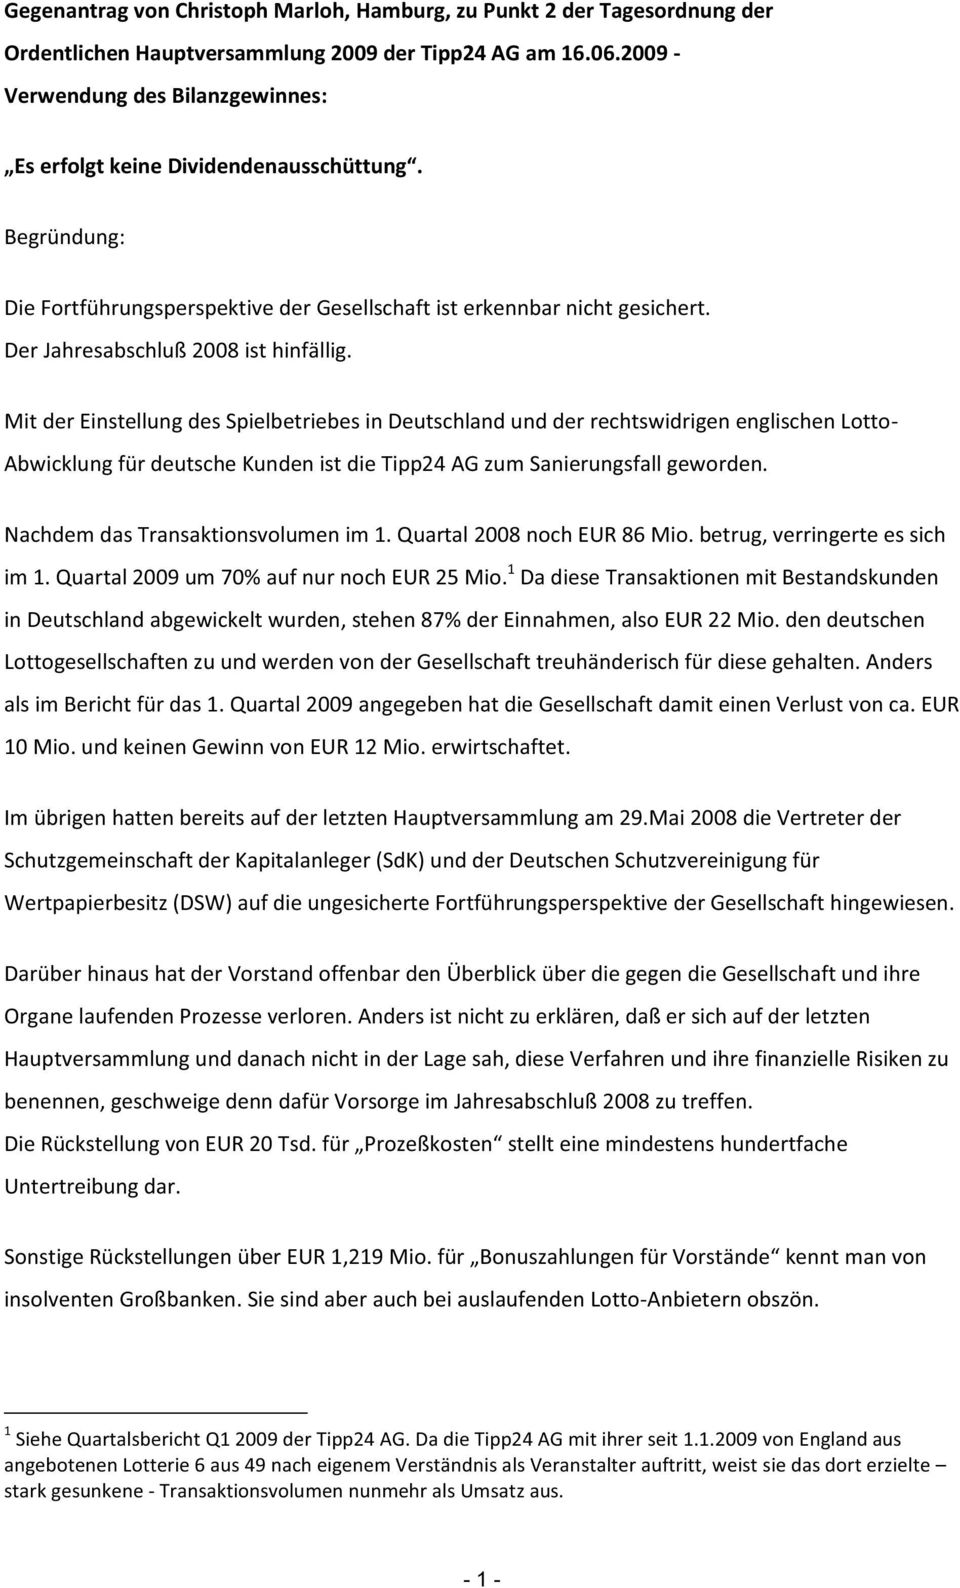 Mit der Einstellung des Spielbetriebes in Deutschland und der rechtswidrigen englischen Lotto- Abwicklung für deutsche Kunden ist die Tipp24 AG zum Sanierungsfall geworden.